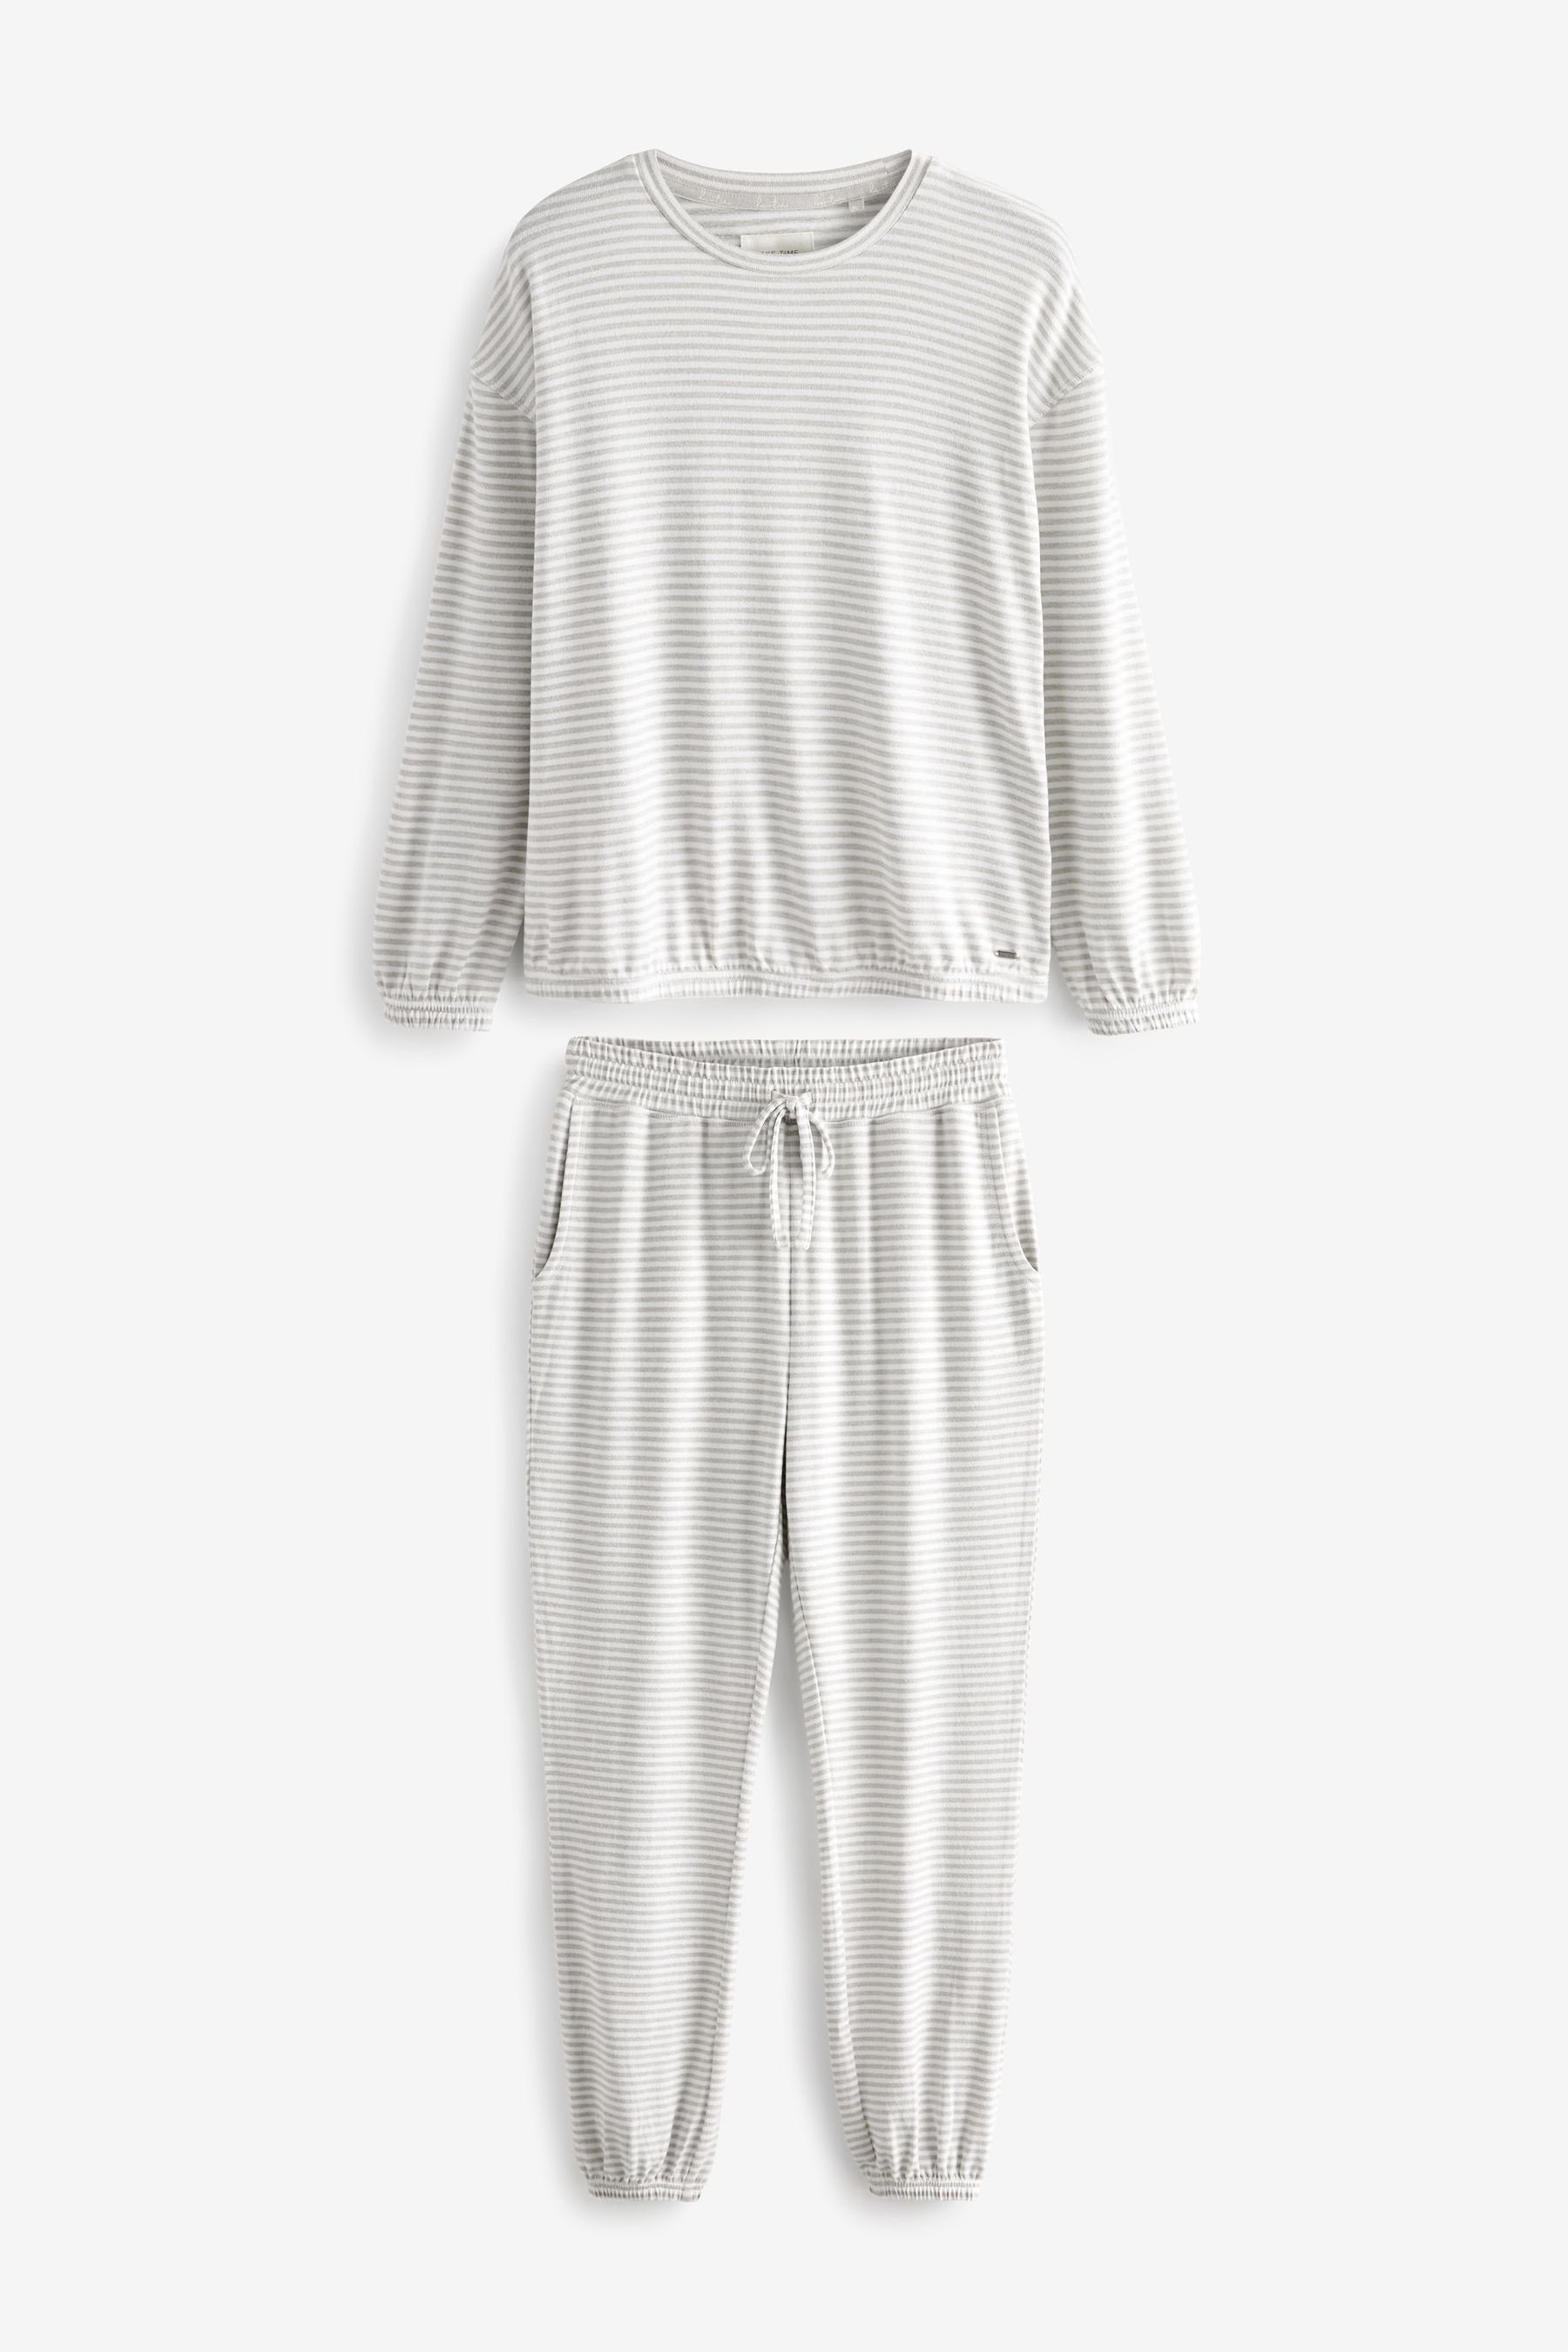 Next Pyjama Bequemer und tlg) (2 Grey Pyjama superweicher